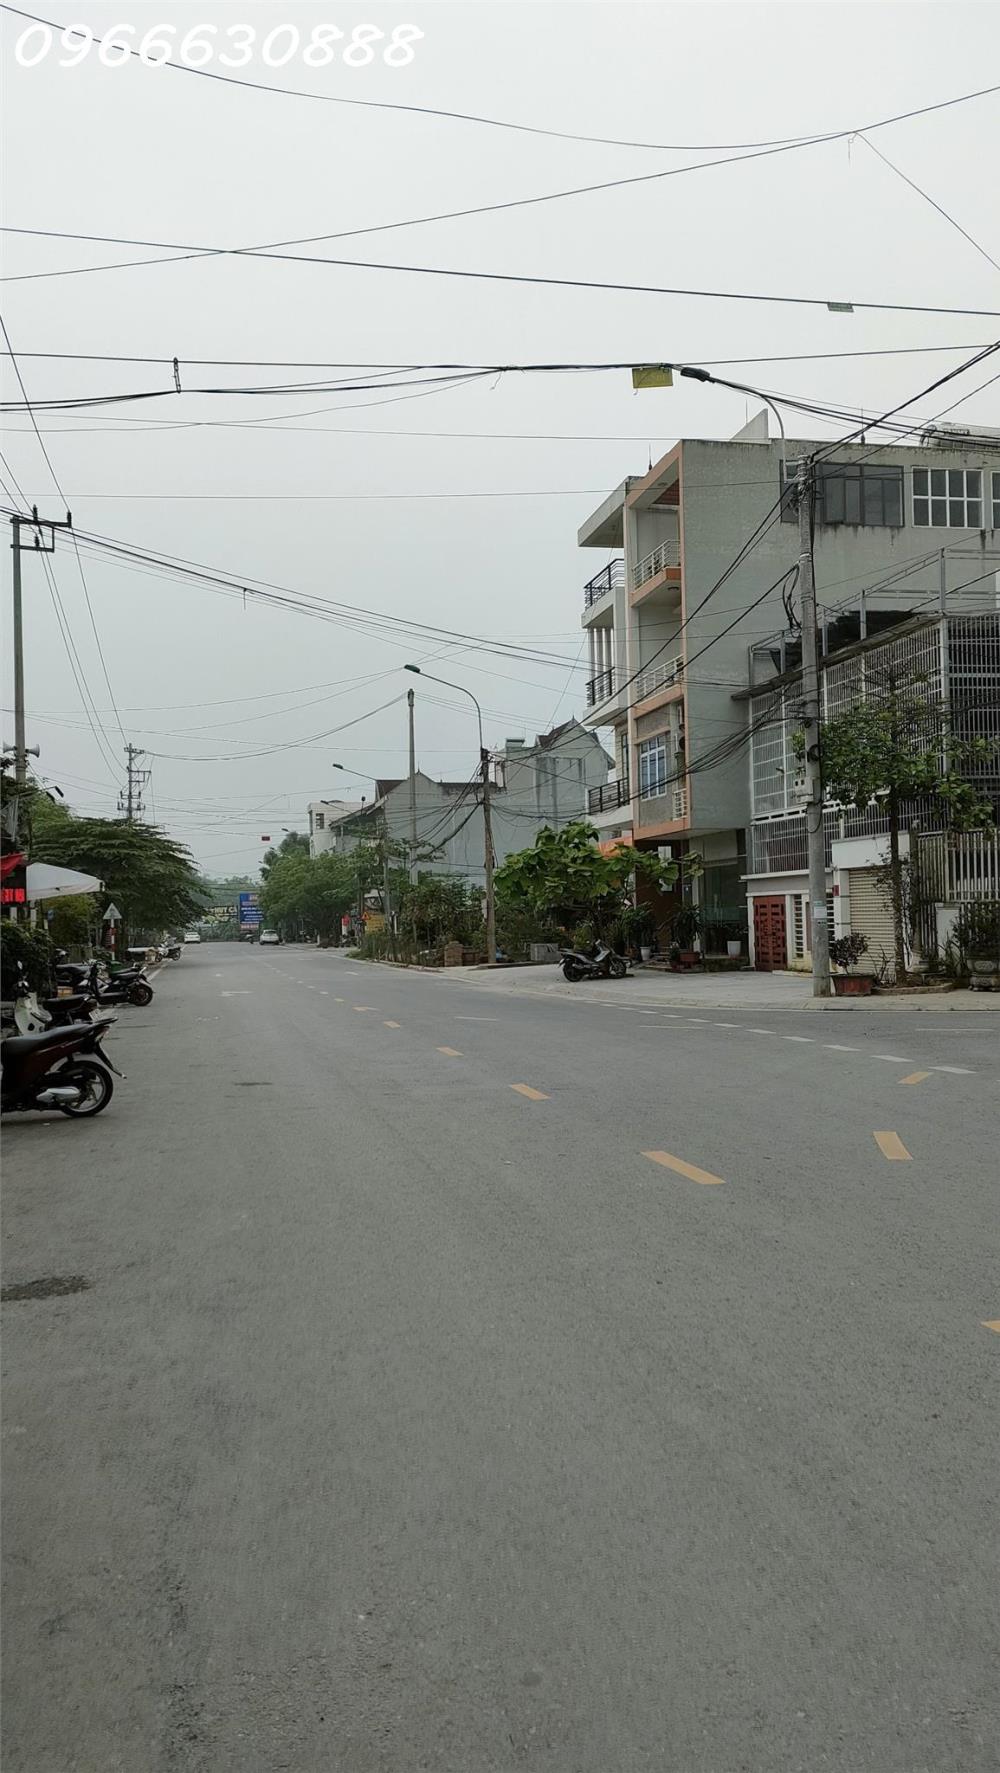 Sở hữu ngôi nhà 2 tầng  tại vị trí đắc địa - Phường Phan Thiết TP Tuyên Quang1472917